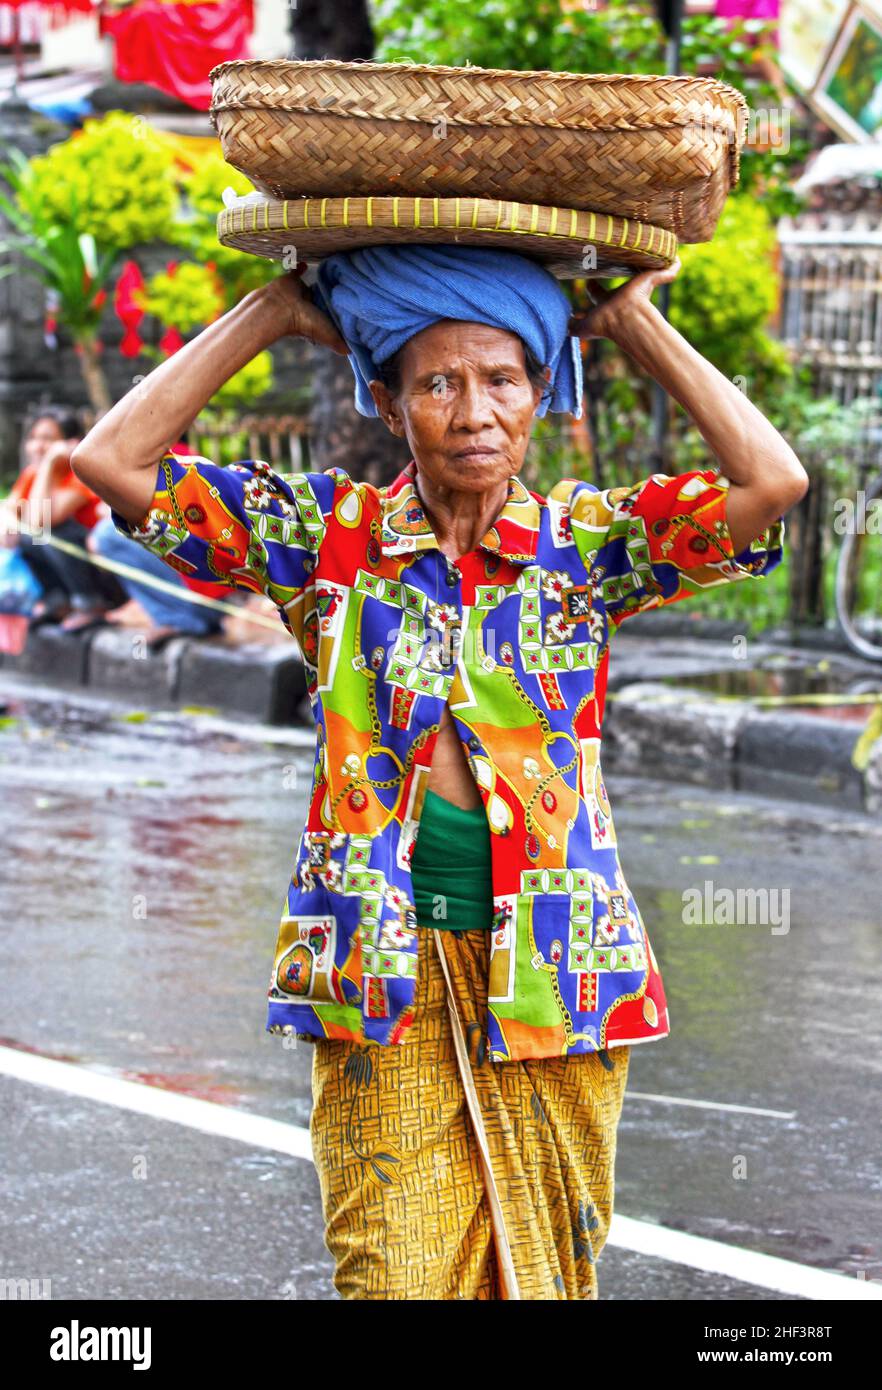 Eine ältere balinesische Frau mit einer bunten Bluse, die einen Korb auf dem Kopf auf dem Sukawati Markt in Bali, Indonesien trägt Stockfoto